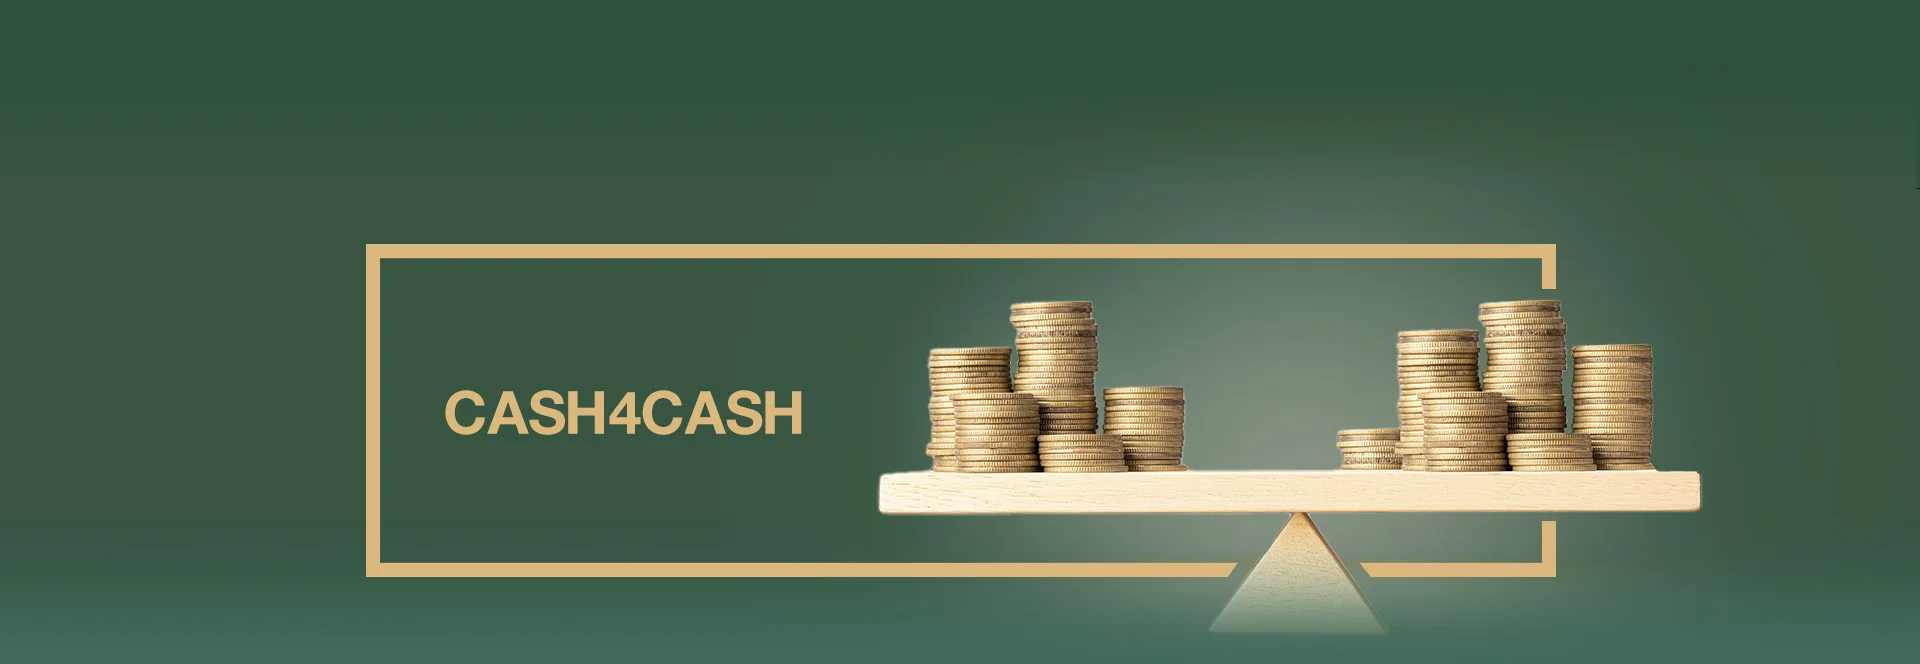 Cash4Cash